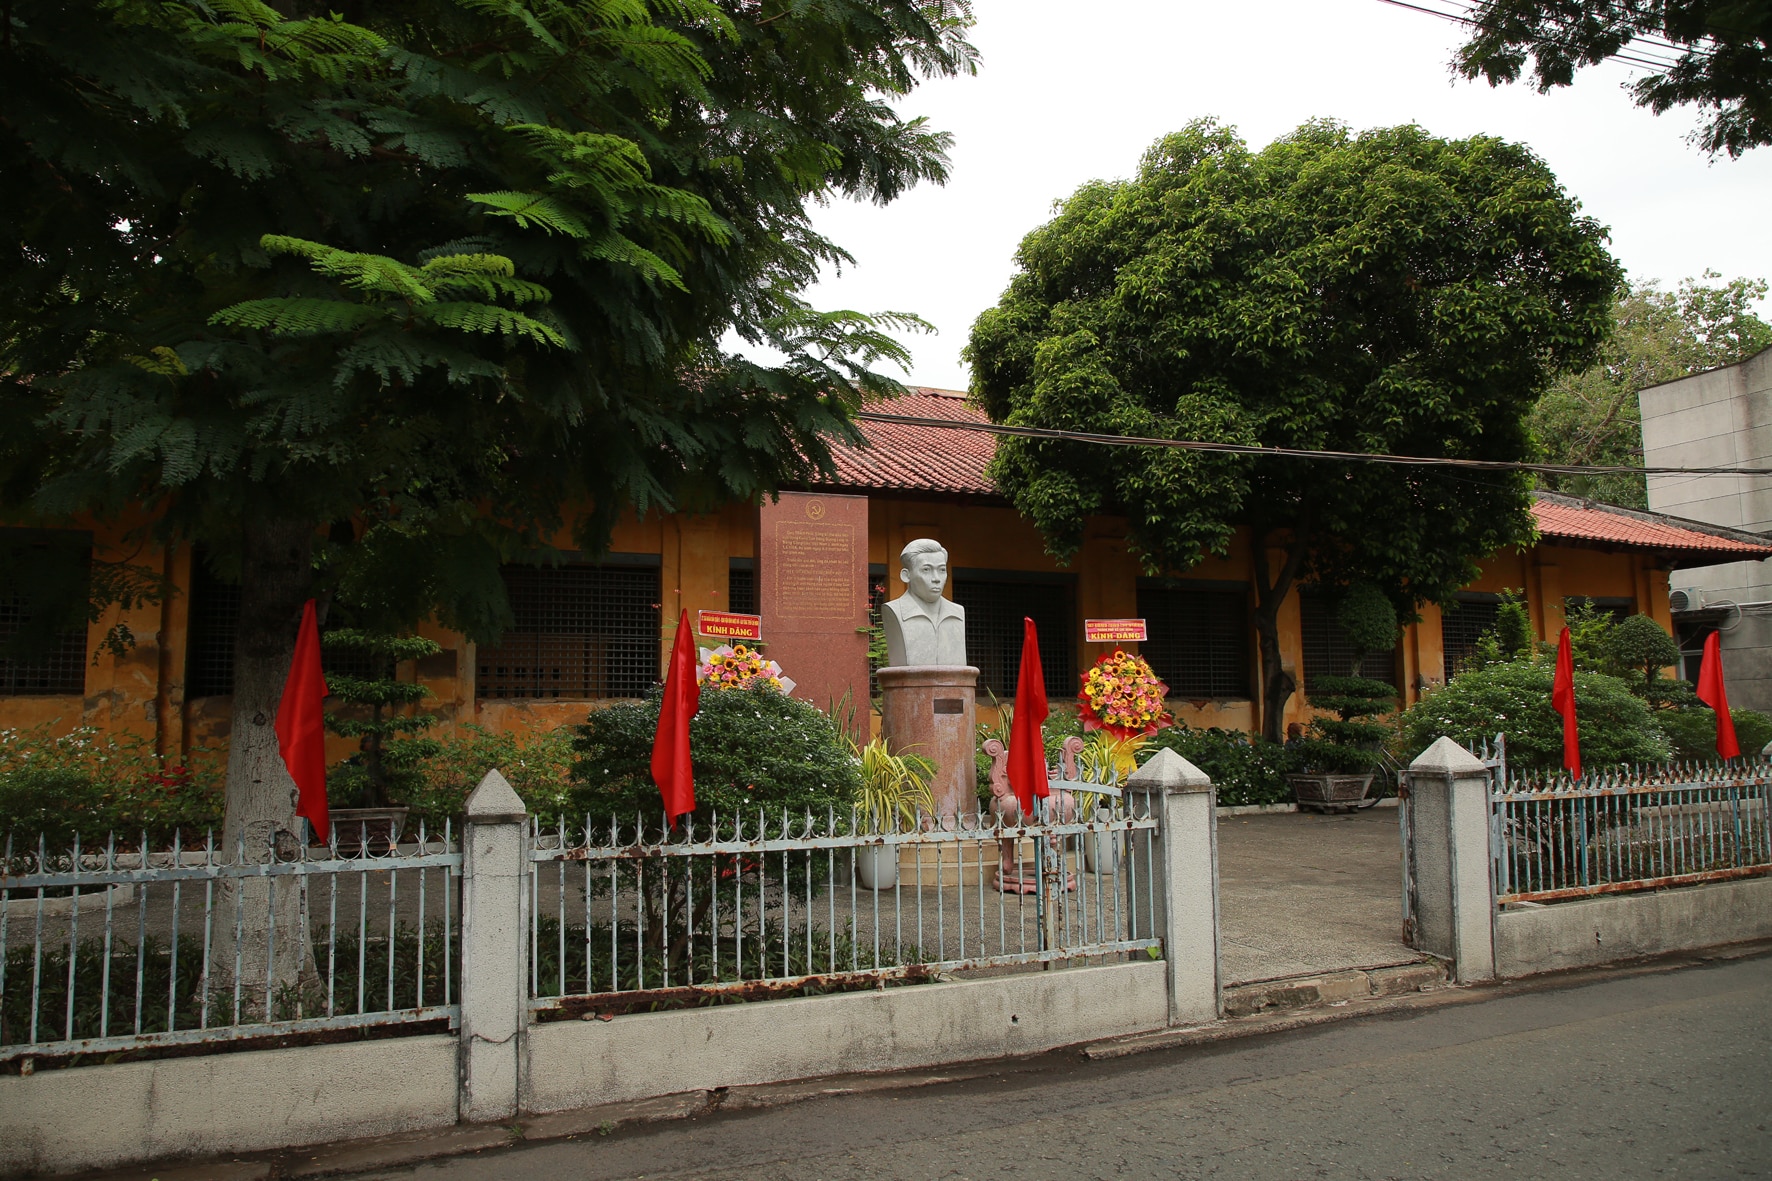 Khu trại giam Bệnh viện Chợ Quán, nơi Tổng Bí thư Trần Phú bị giam cầm gắn chặt với lịch sử Sài Gòn-Gia Định  - Ảnh 1.